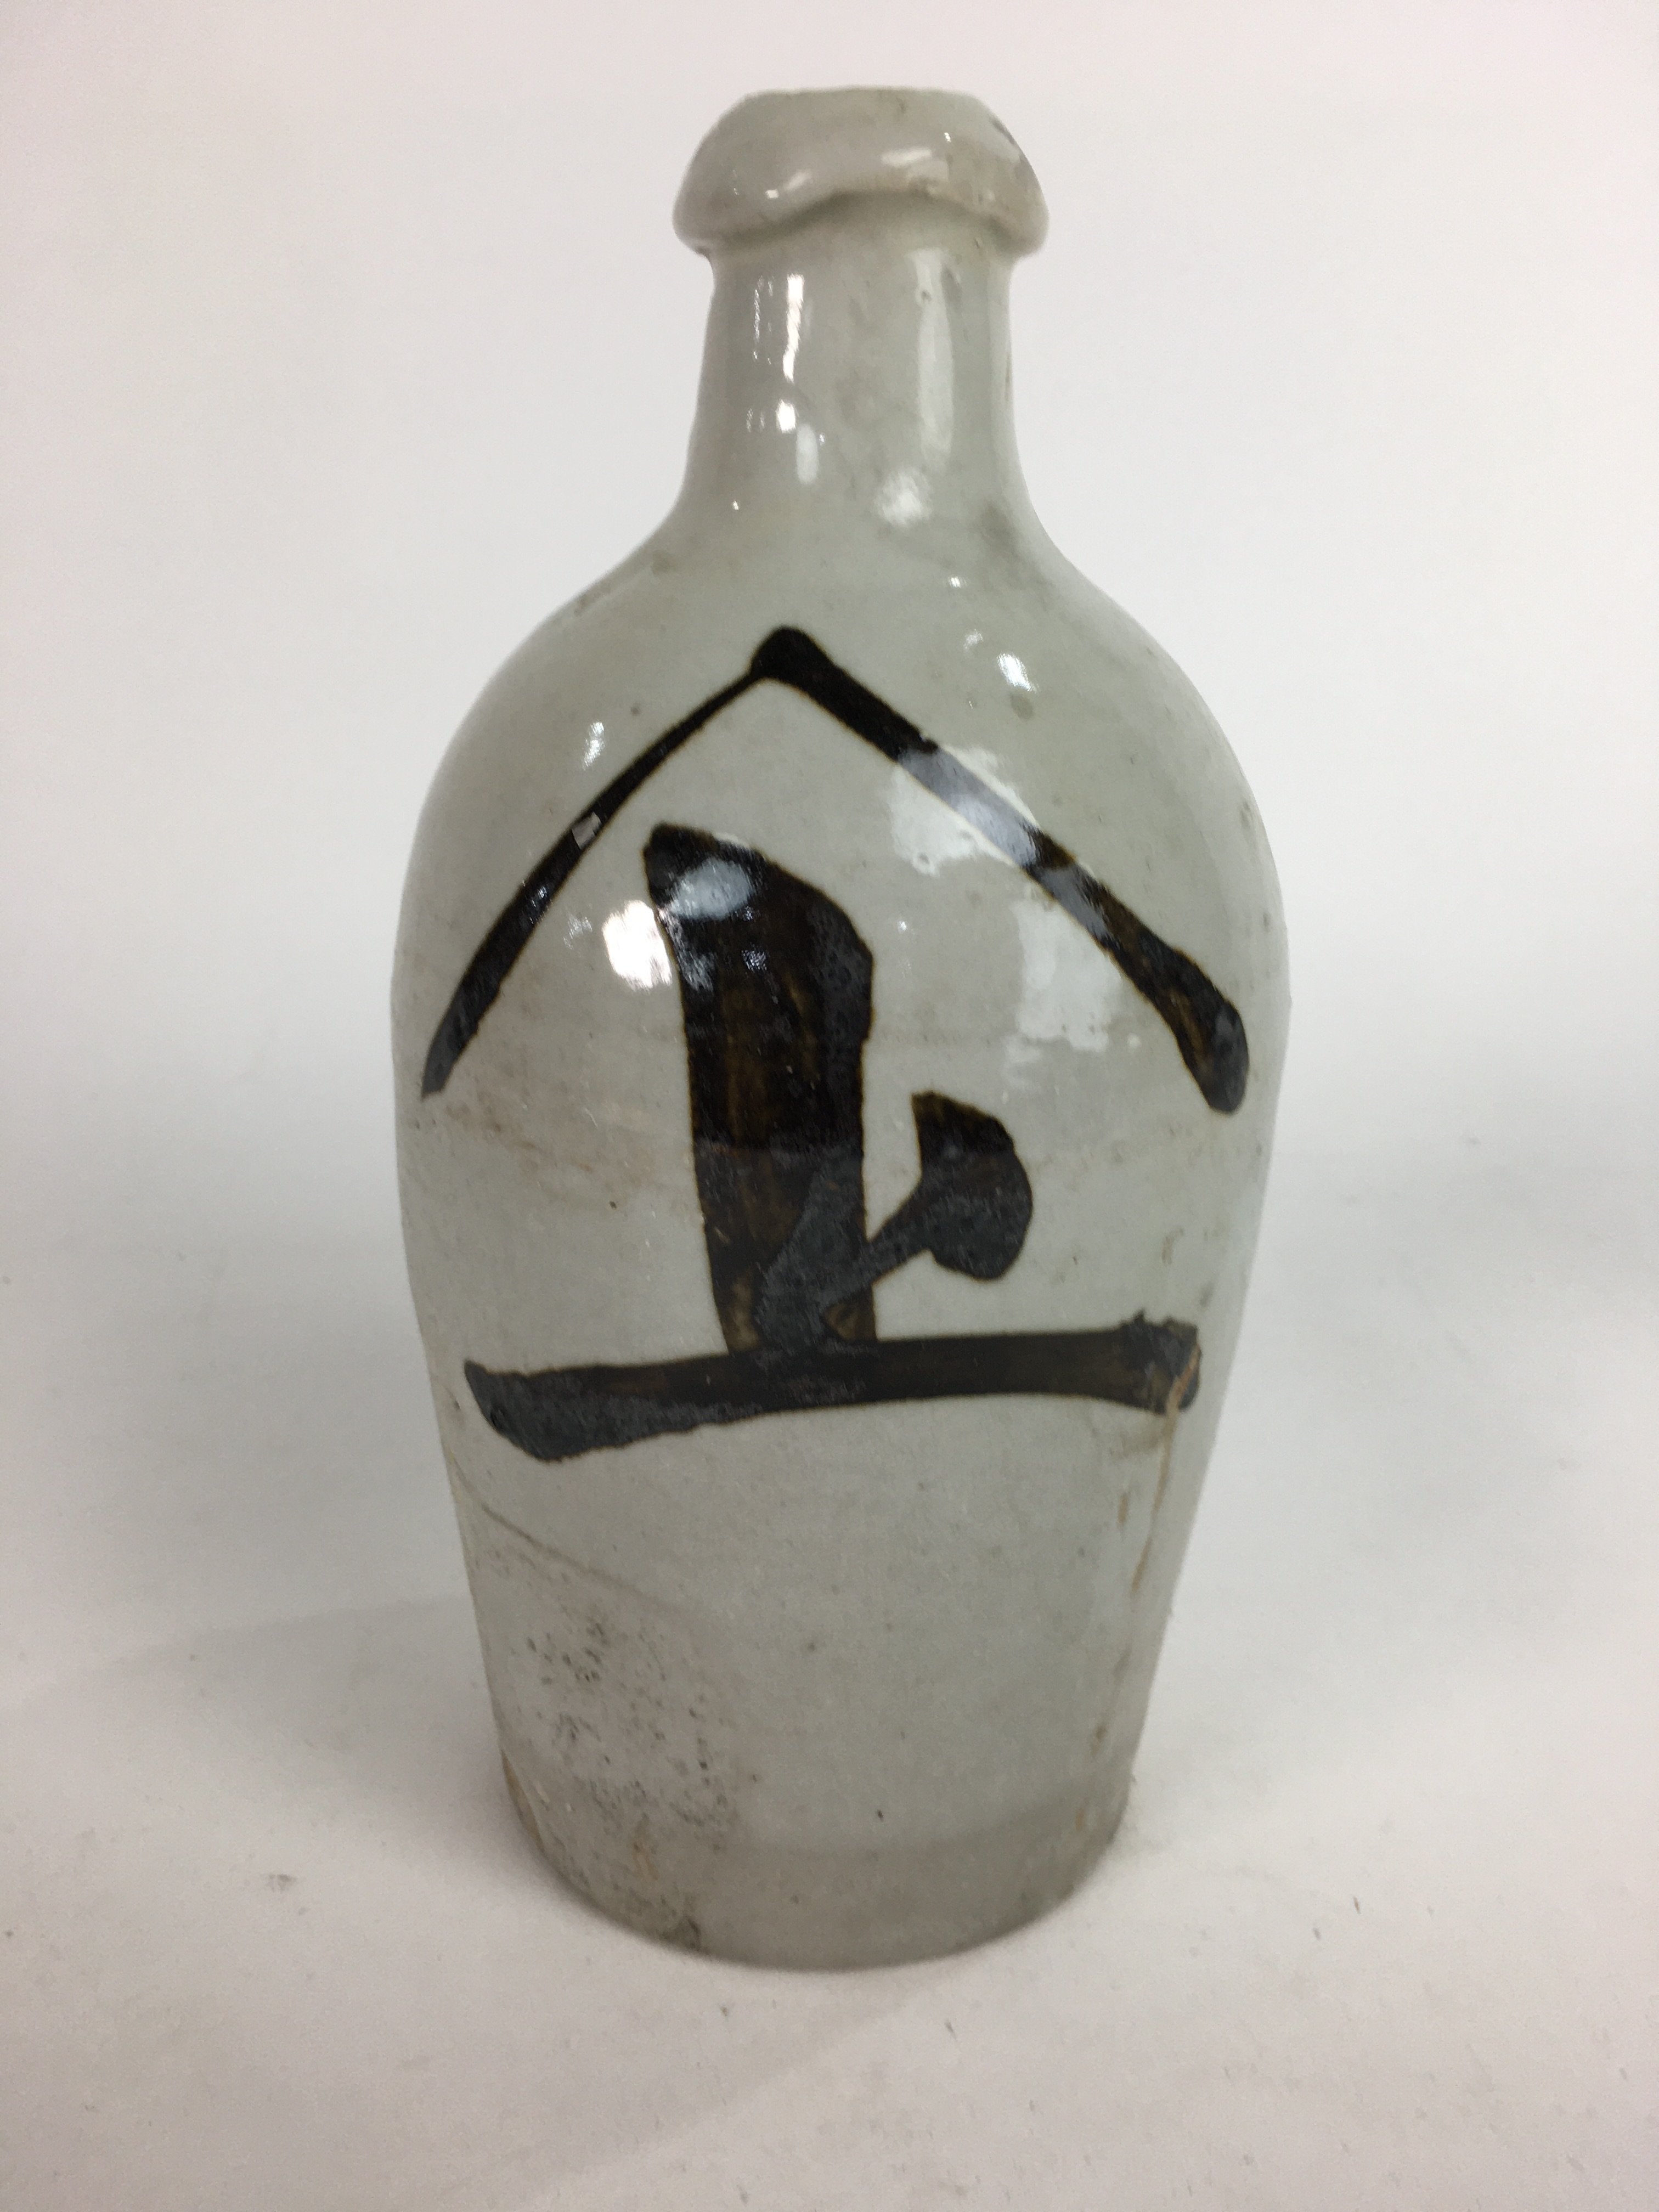 Japanese Ceramic Sake Bottle Tokkuri Vtg Pottery Gray Hand-Written Kanji TS275